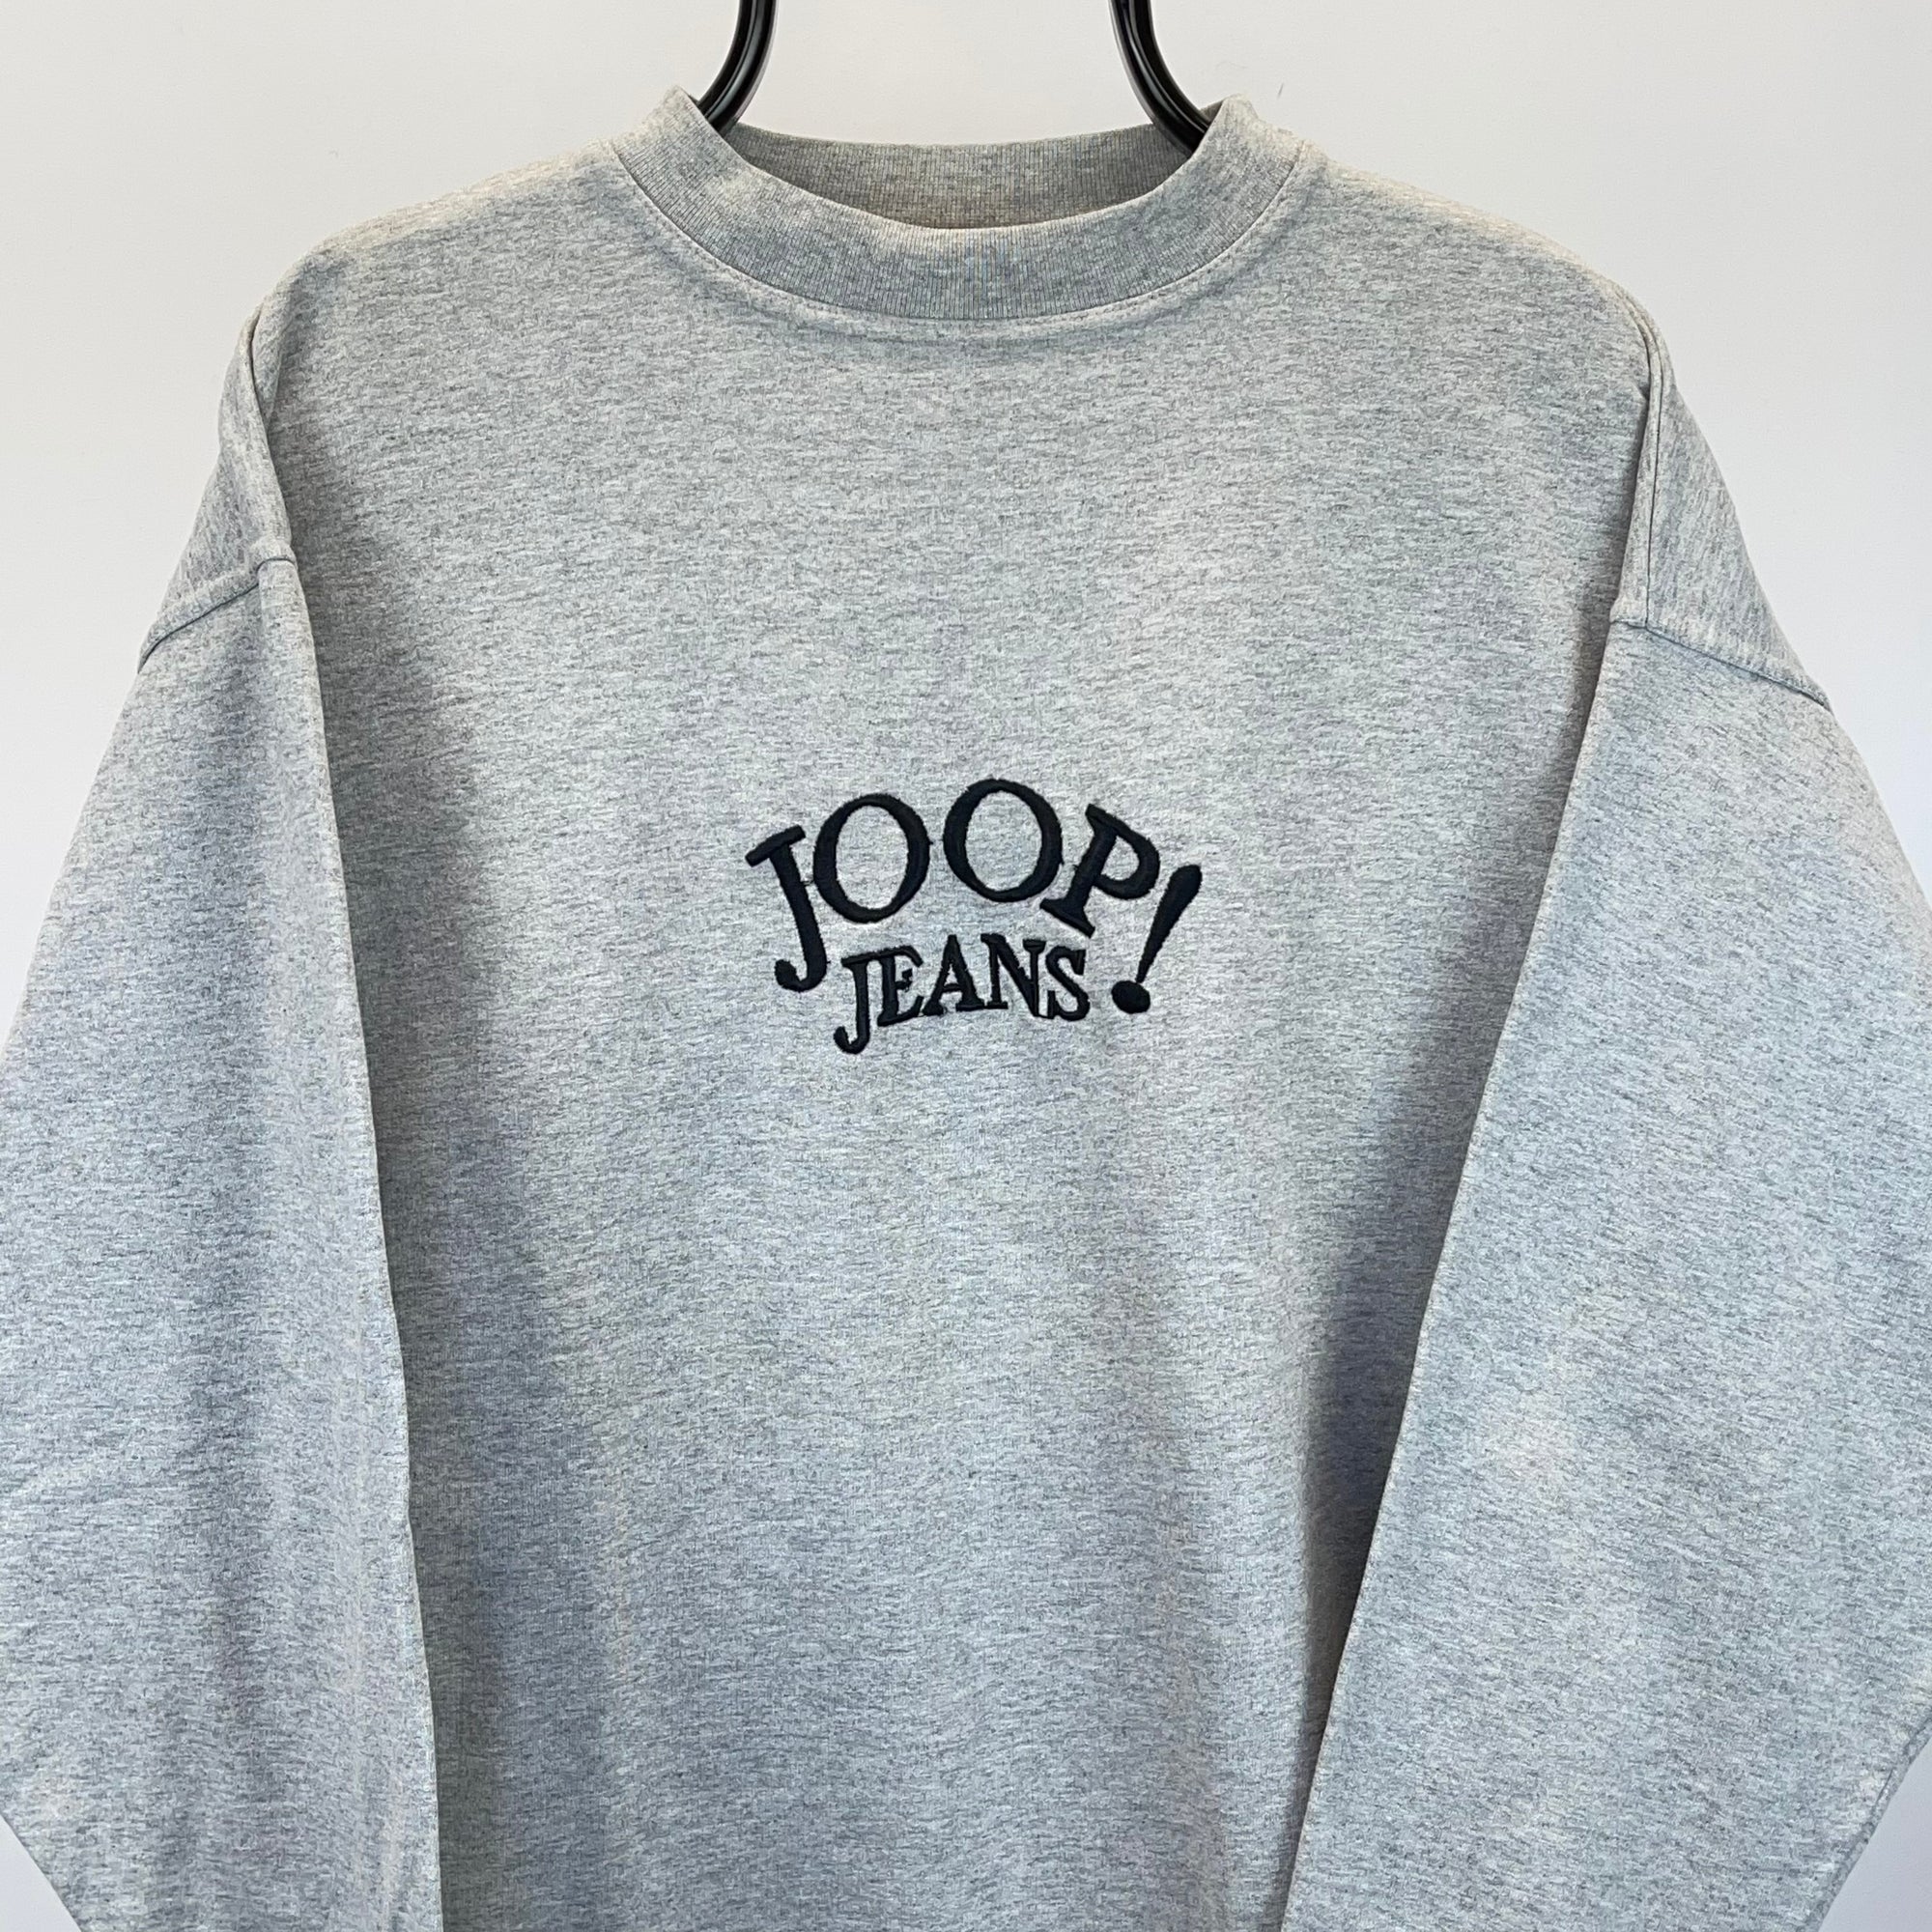 Vintage 90s Joop Jeans Spellout Sweatshirt in Grey - Men’s Large/Women’s XL